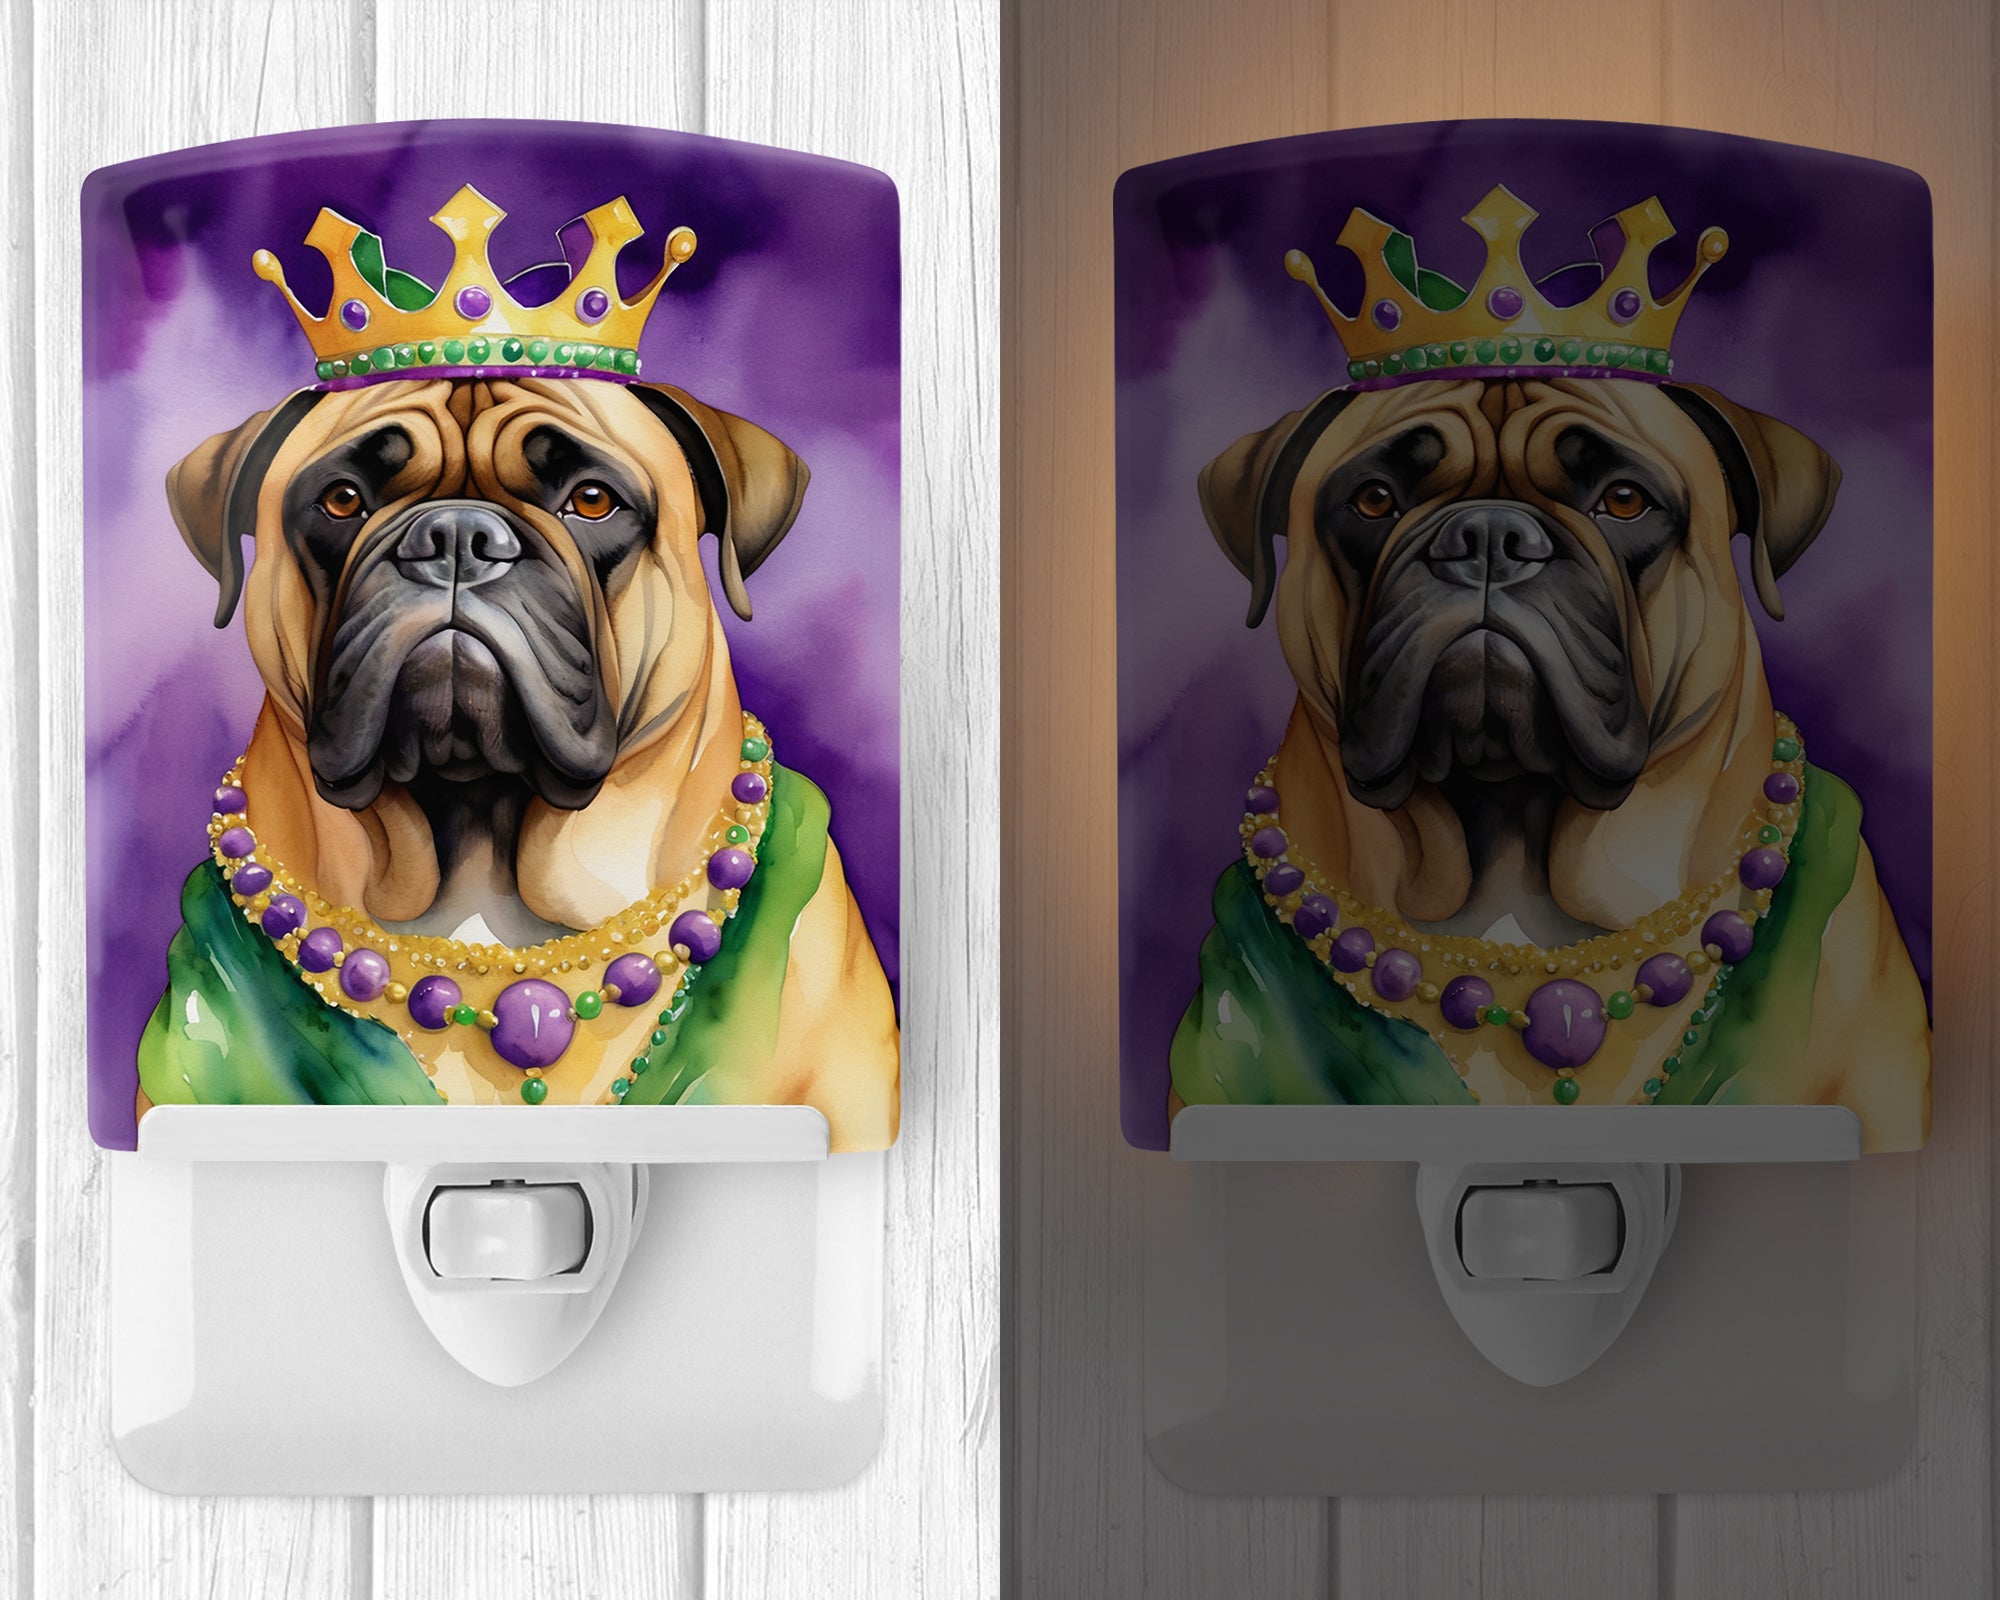 Buy this Bullmastiff King of Mardi Gras Ceramic Night Light